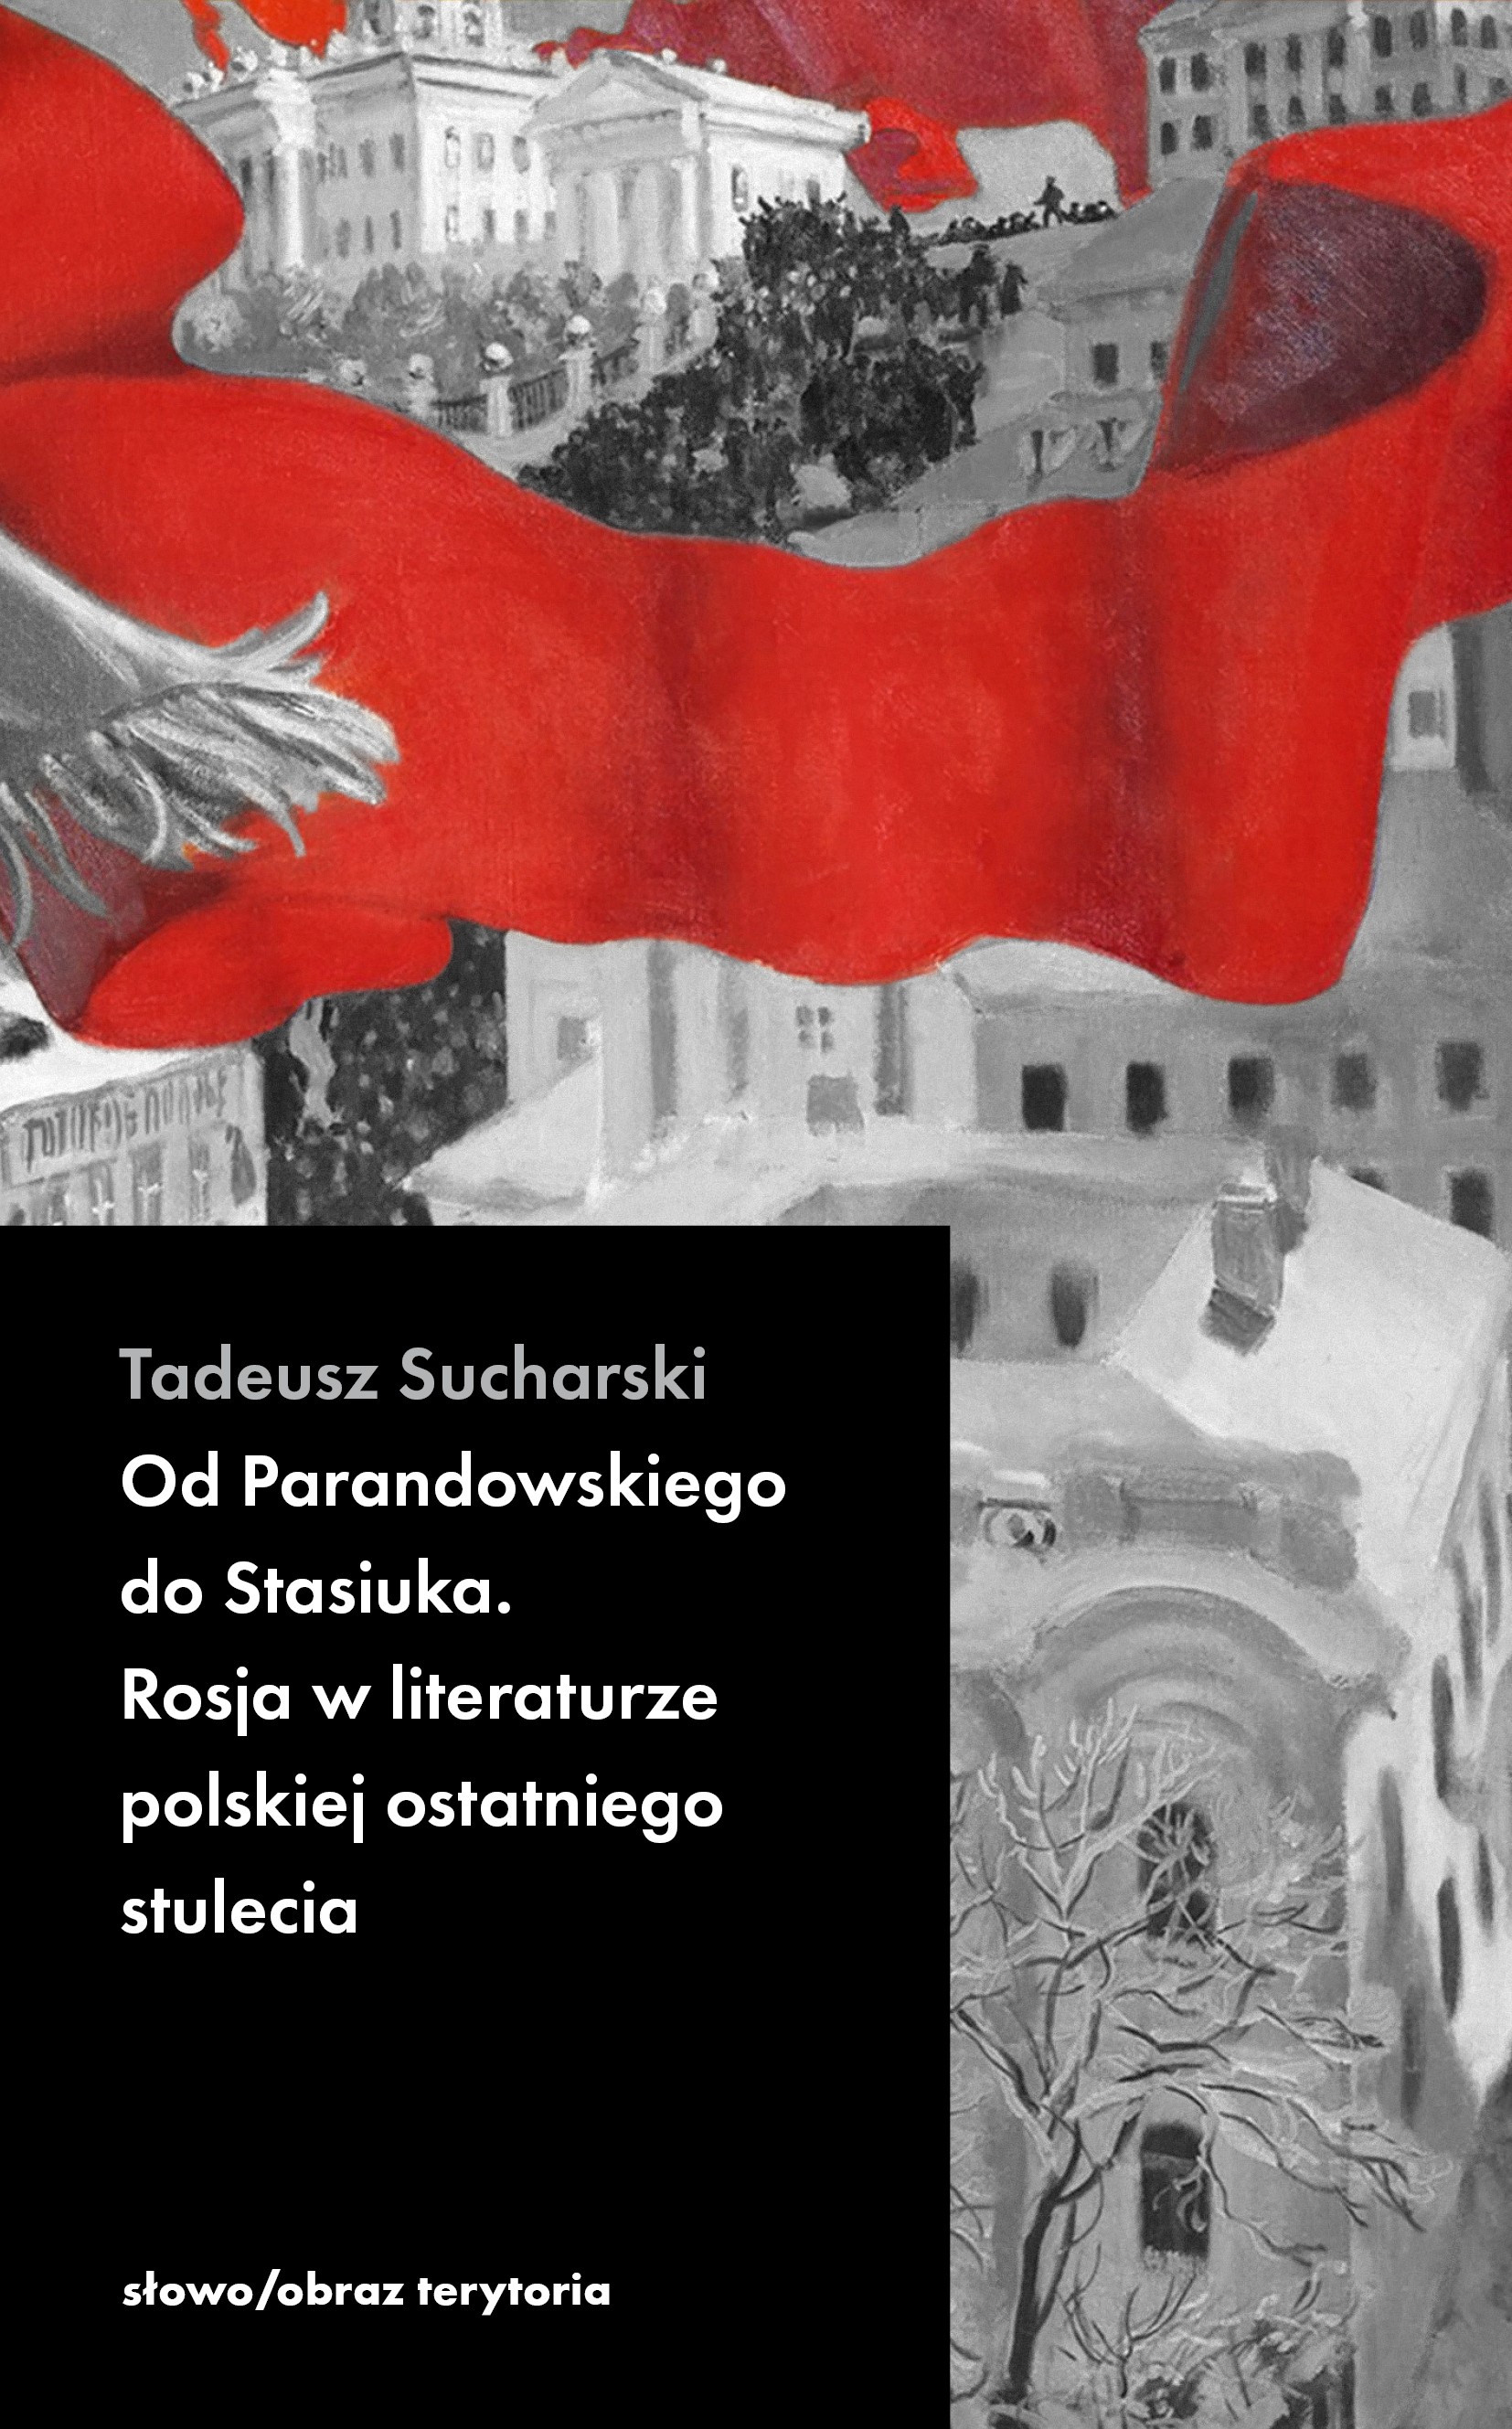 Rosja w literaturze polskiej – od Parandowskiego do Stasiuka